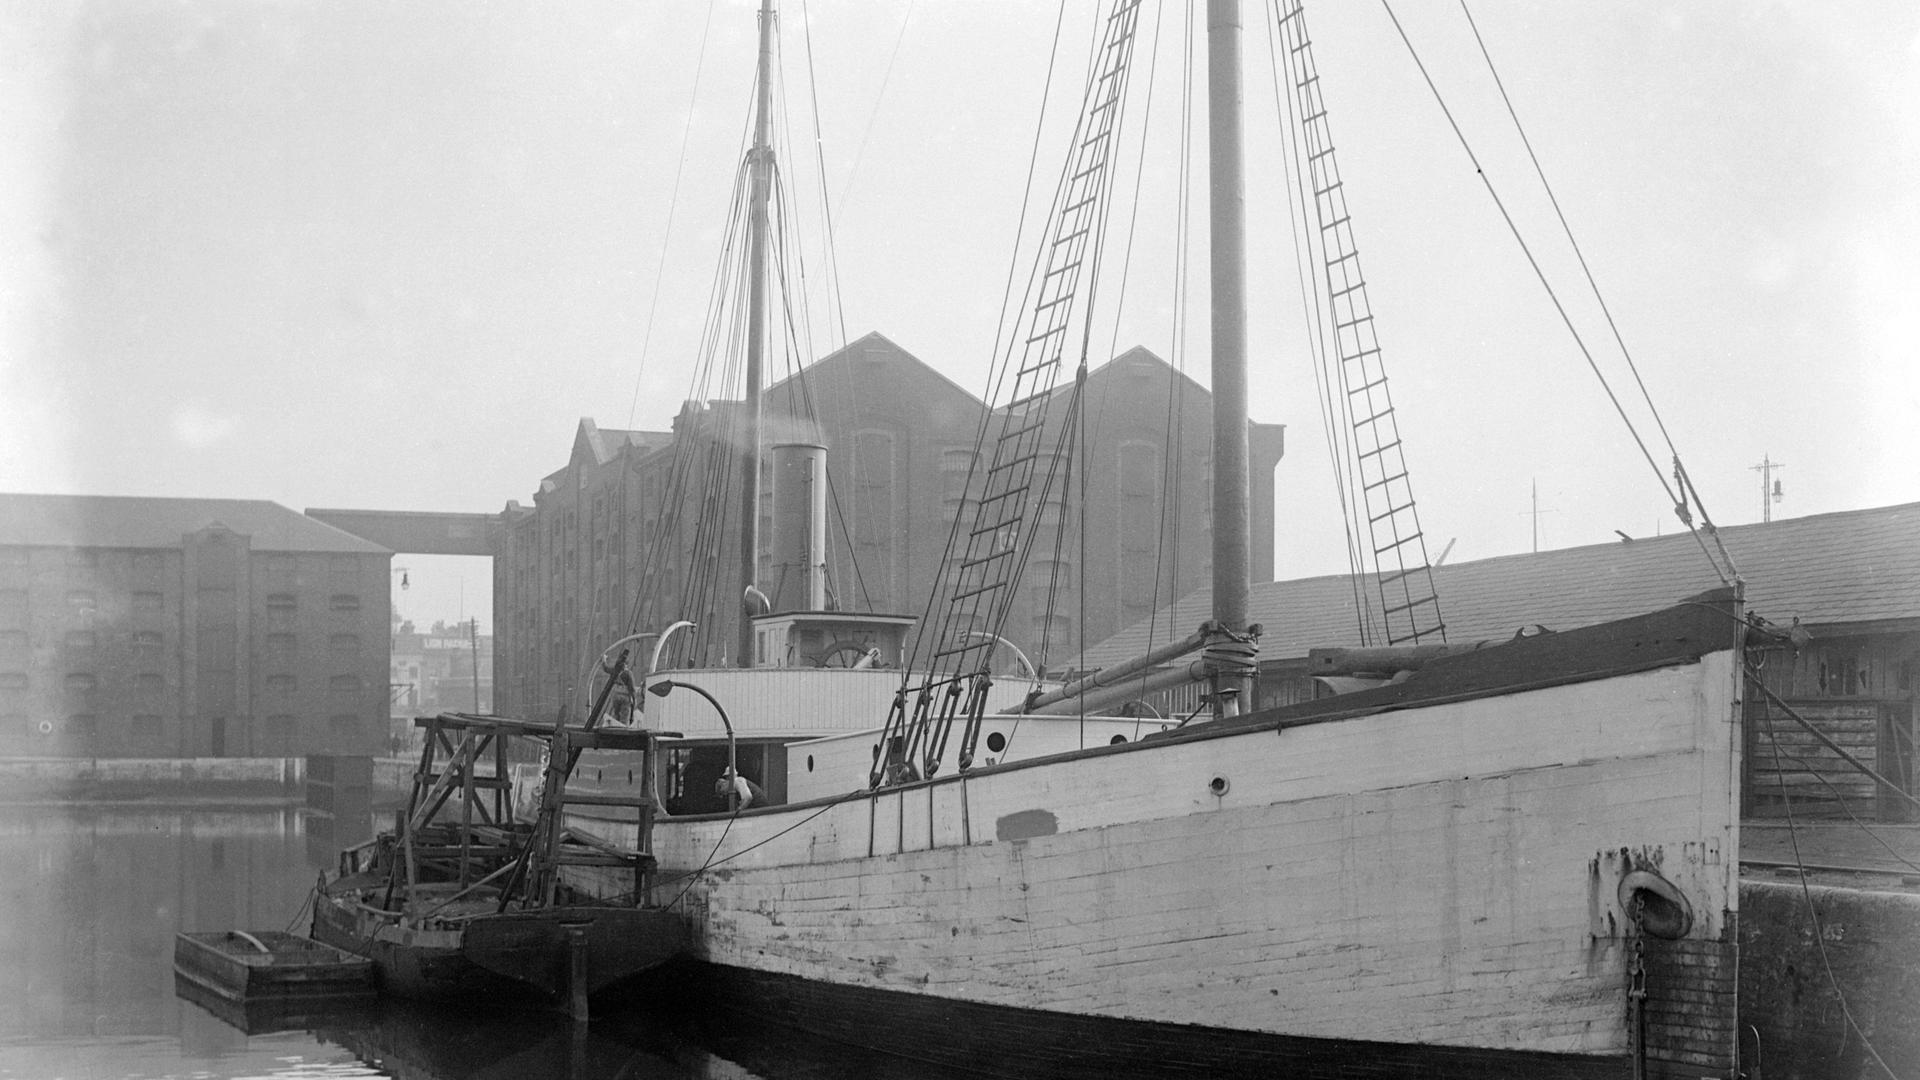 Das Expeditionsschiff Quest liegt im Hafen in Southampton